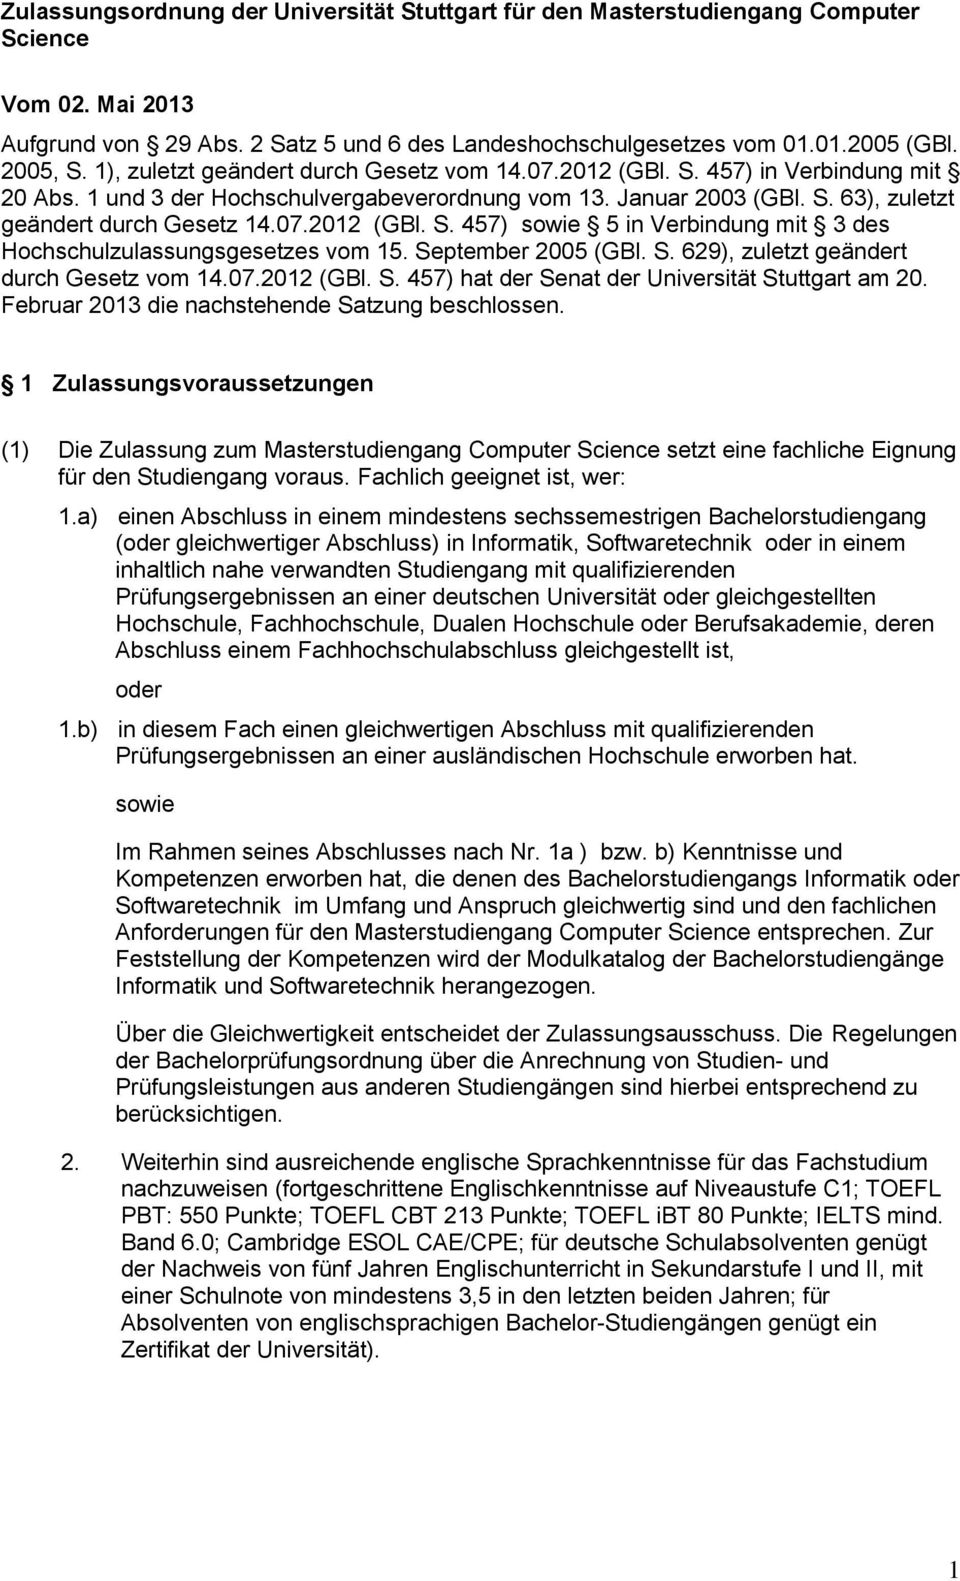 September 2005 (GBl. S. 629), zuletzt geändert durch Gesetz vom 14.07.2012 (GBl. S. 457) hat der Senat der Universität Stuttgart am 20. Februar 2013 die nachstehende Satzung beschlossen.